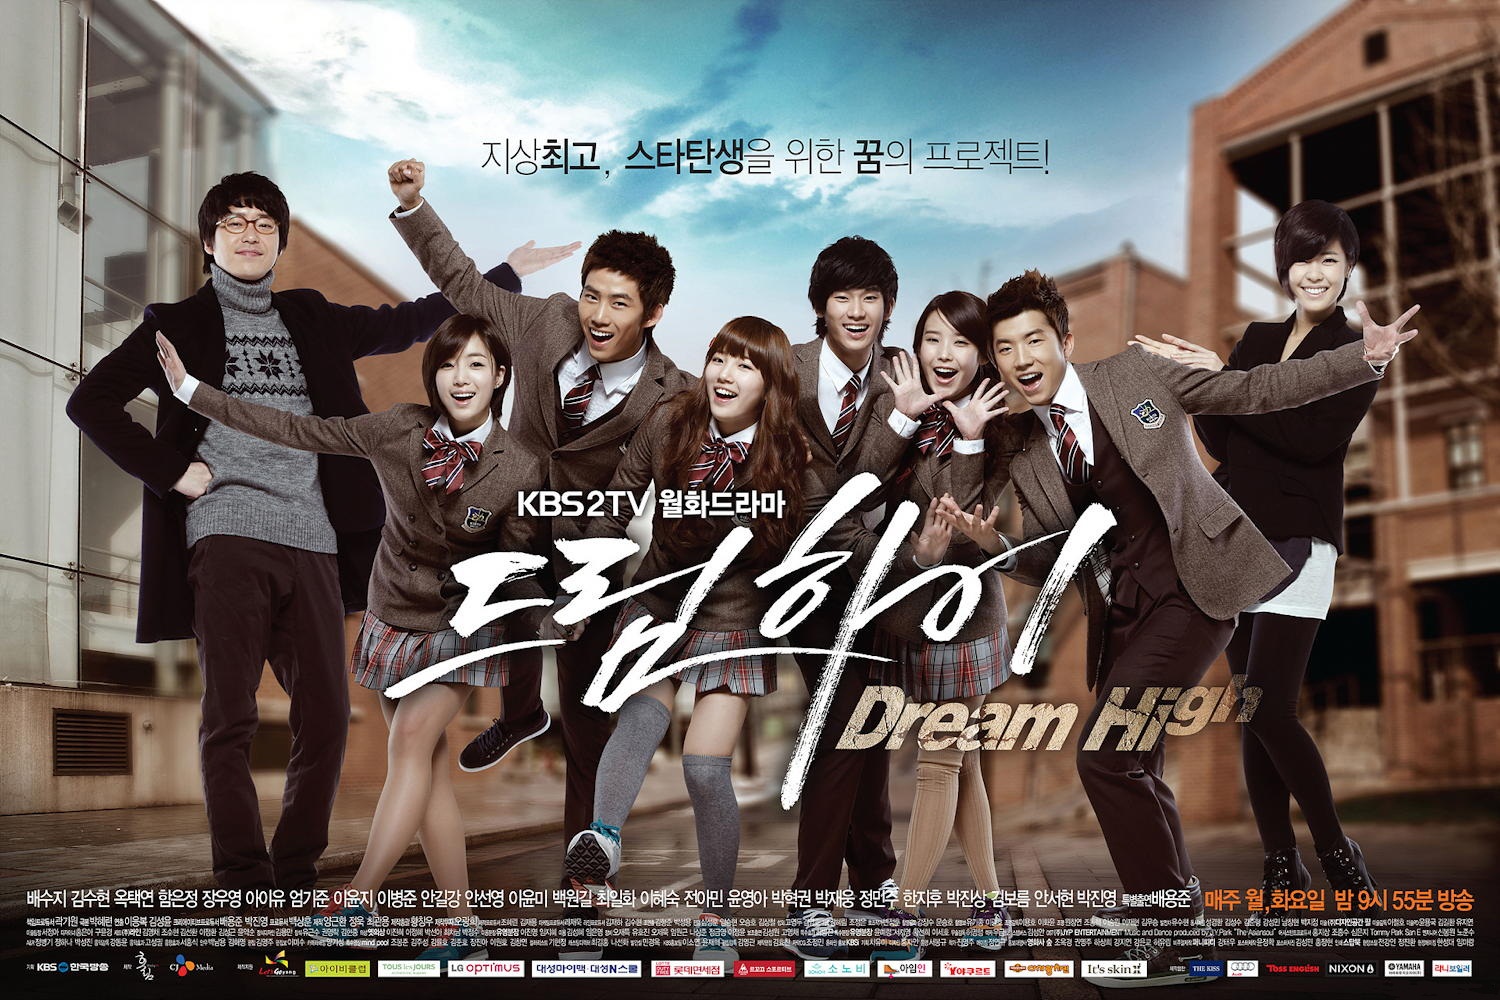 Kim Soo-hyun Kiss Scenes - Dream High